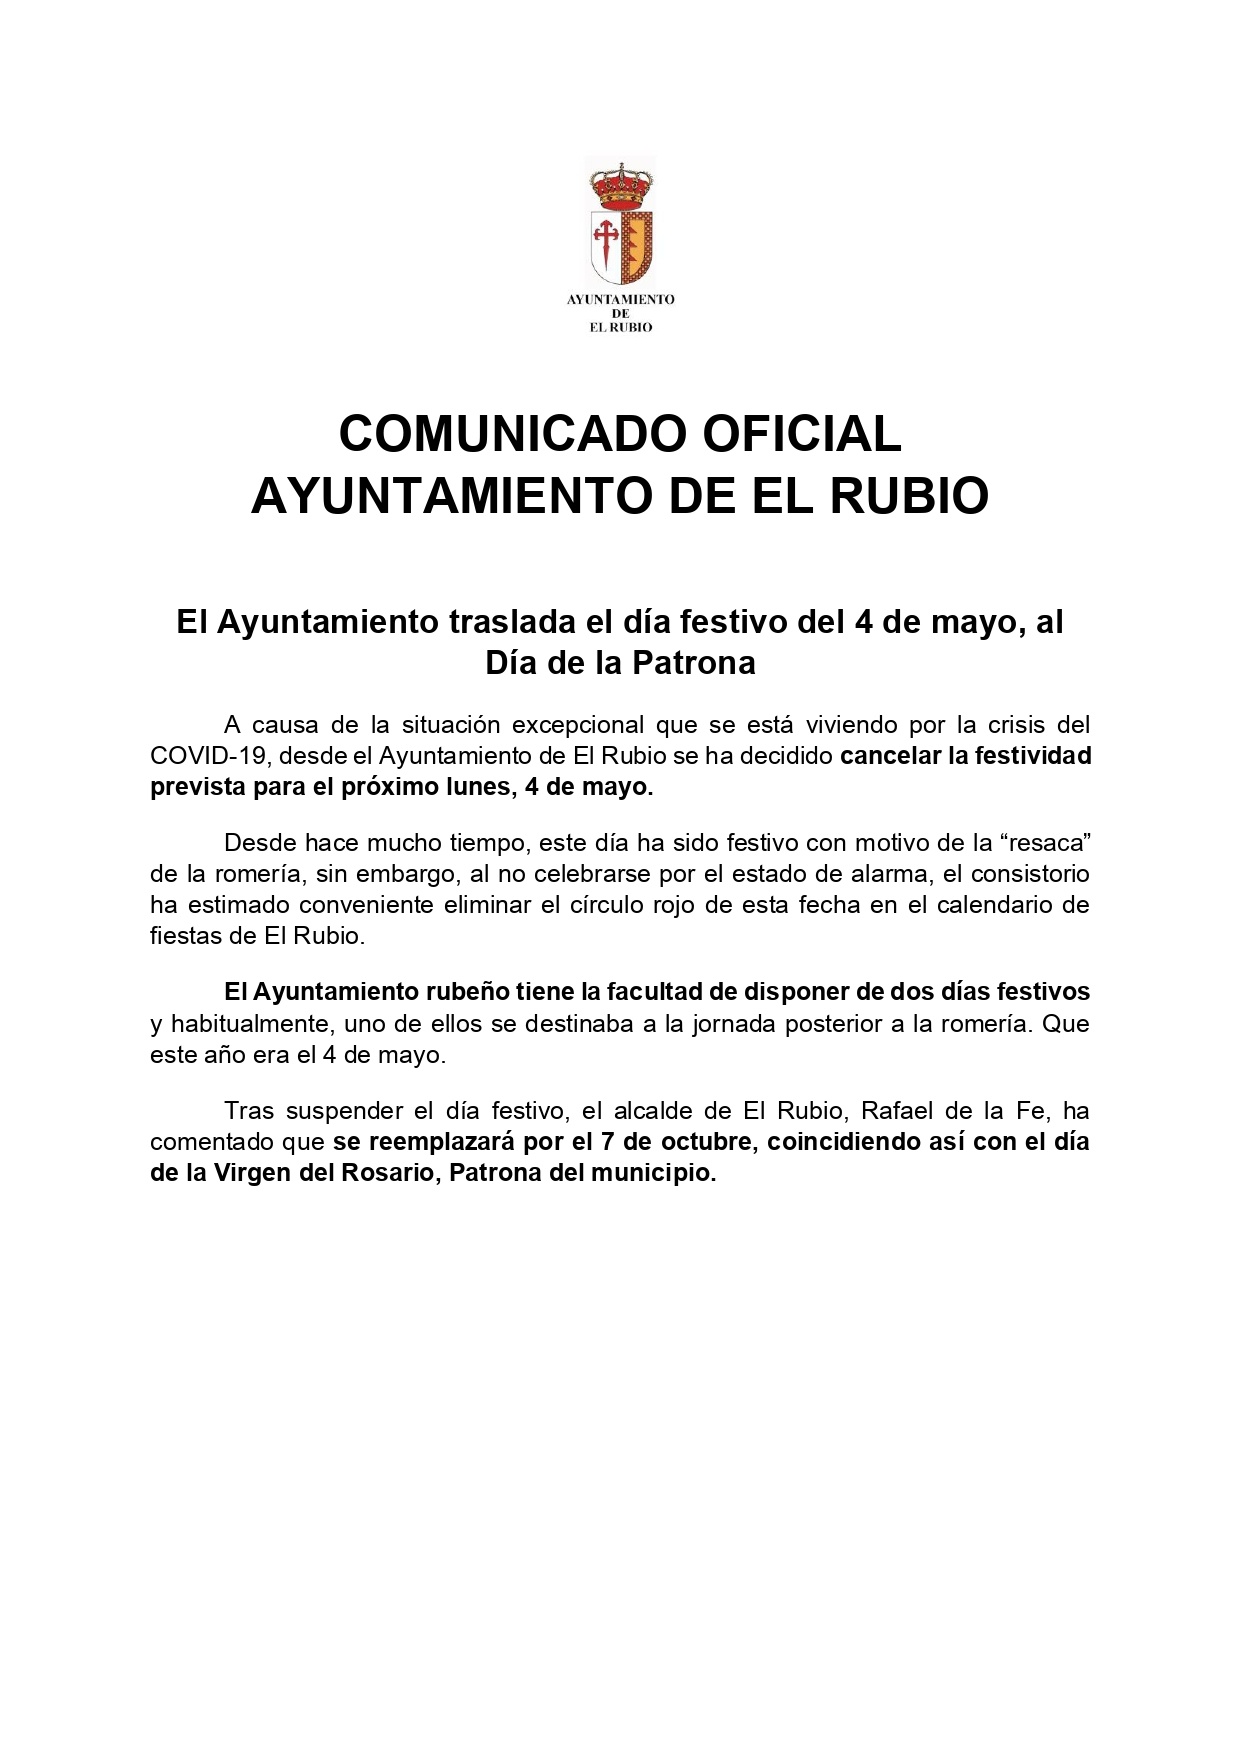 15.-COMUNICADO SUSPENSION 4 DE MAYO AYTO EL RUBIO (3)_page-0001